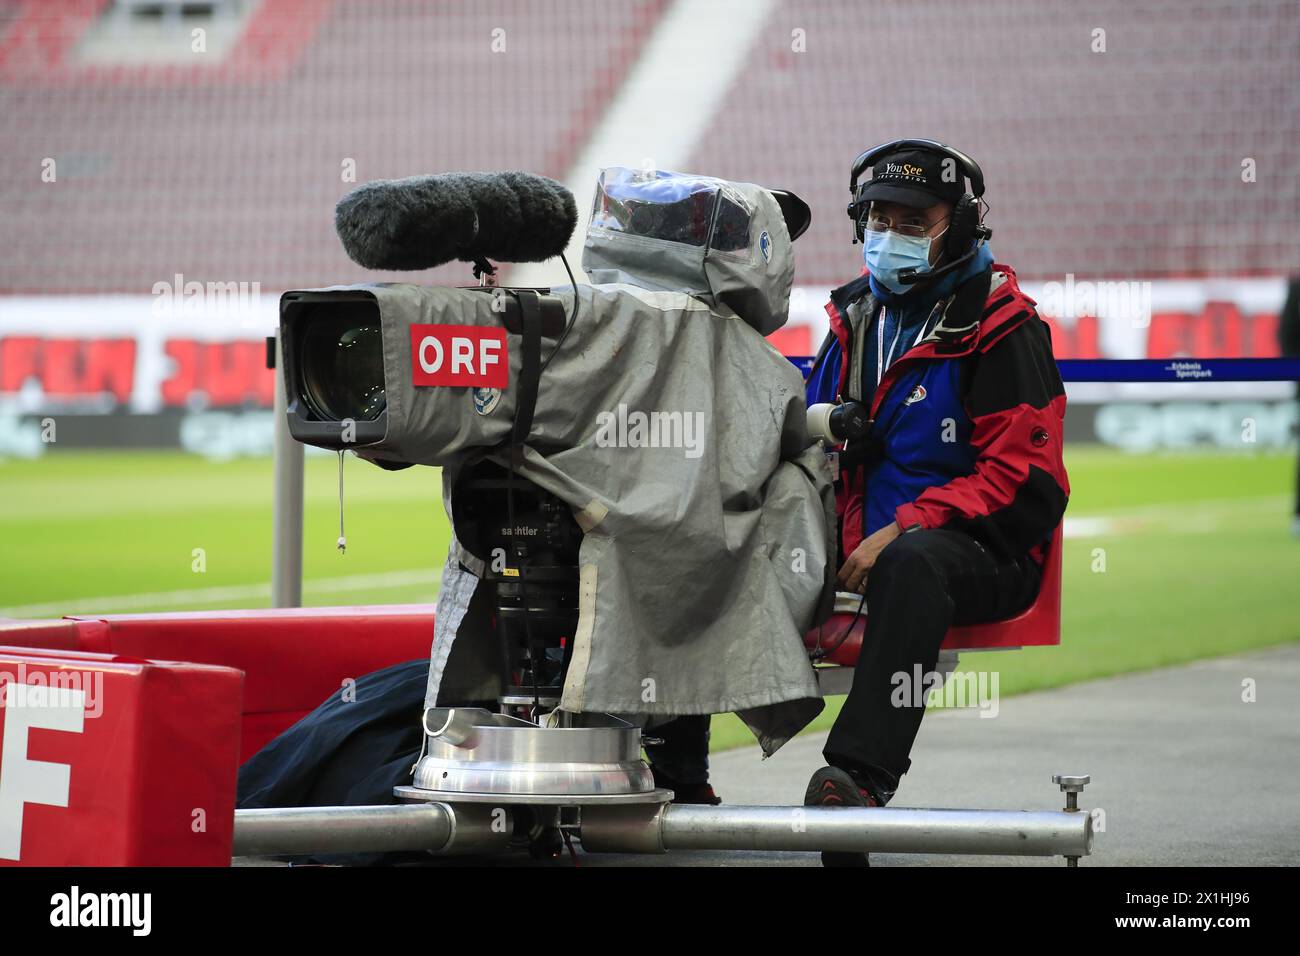 Caméraman avec masque lors de la finale de la Coupe Uniqa ÖFB entre le FC Red Bull Salzburg et le SC Austria Lustenau le 29 mai 2020 à Klagenfurt, Autriche. - 20200529 PD5934 - Rechteinfo : droits gérés (RM) Banque D'Images